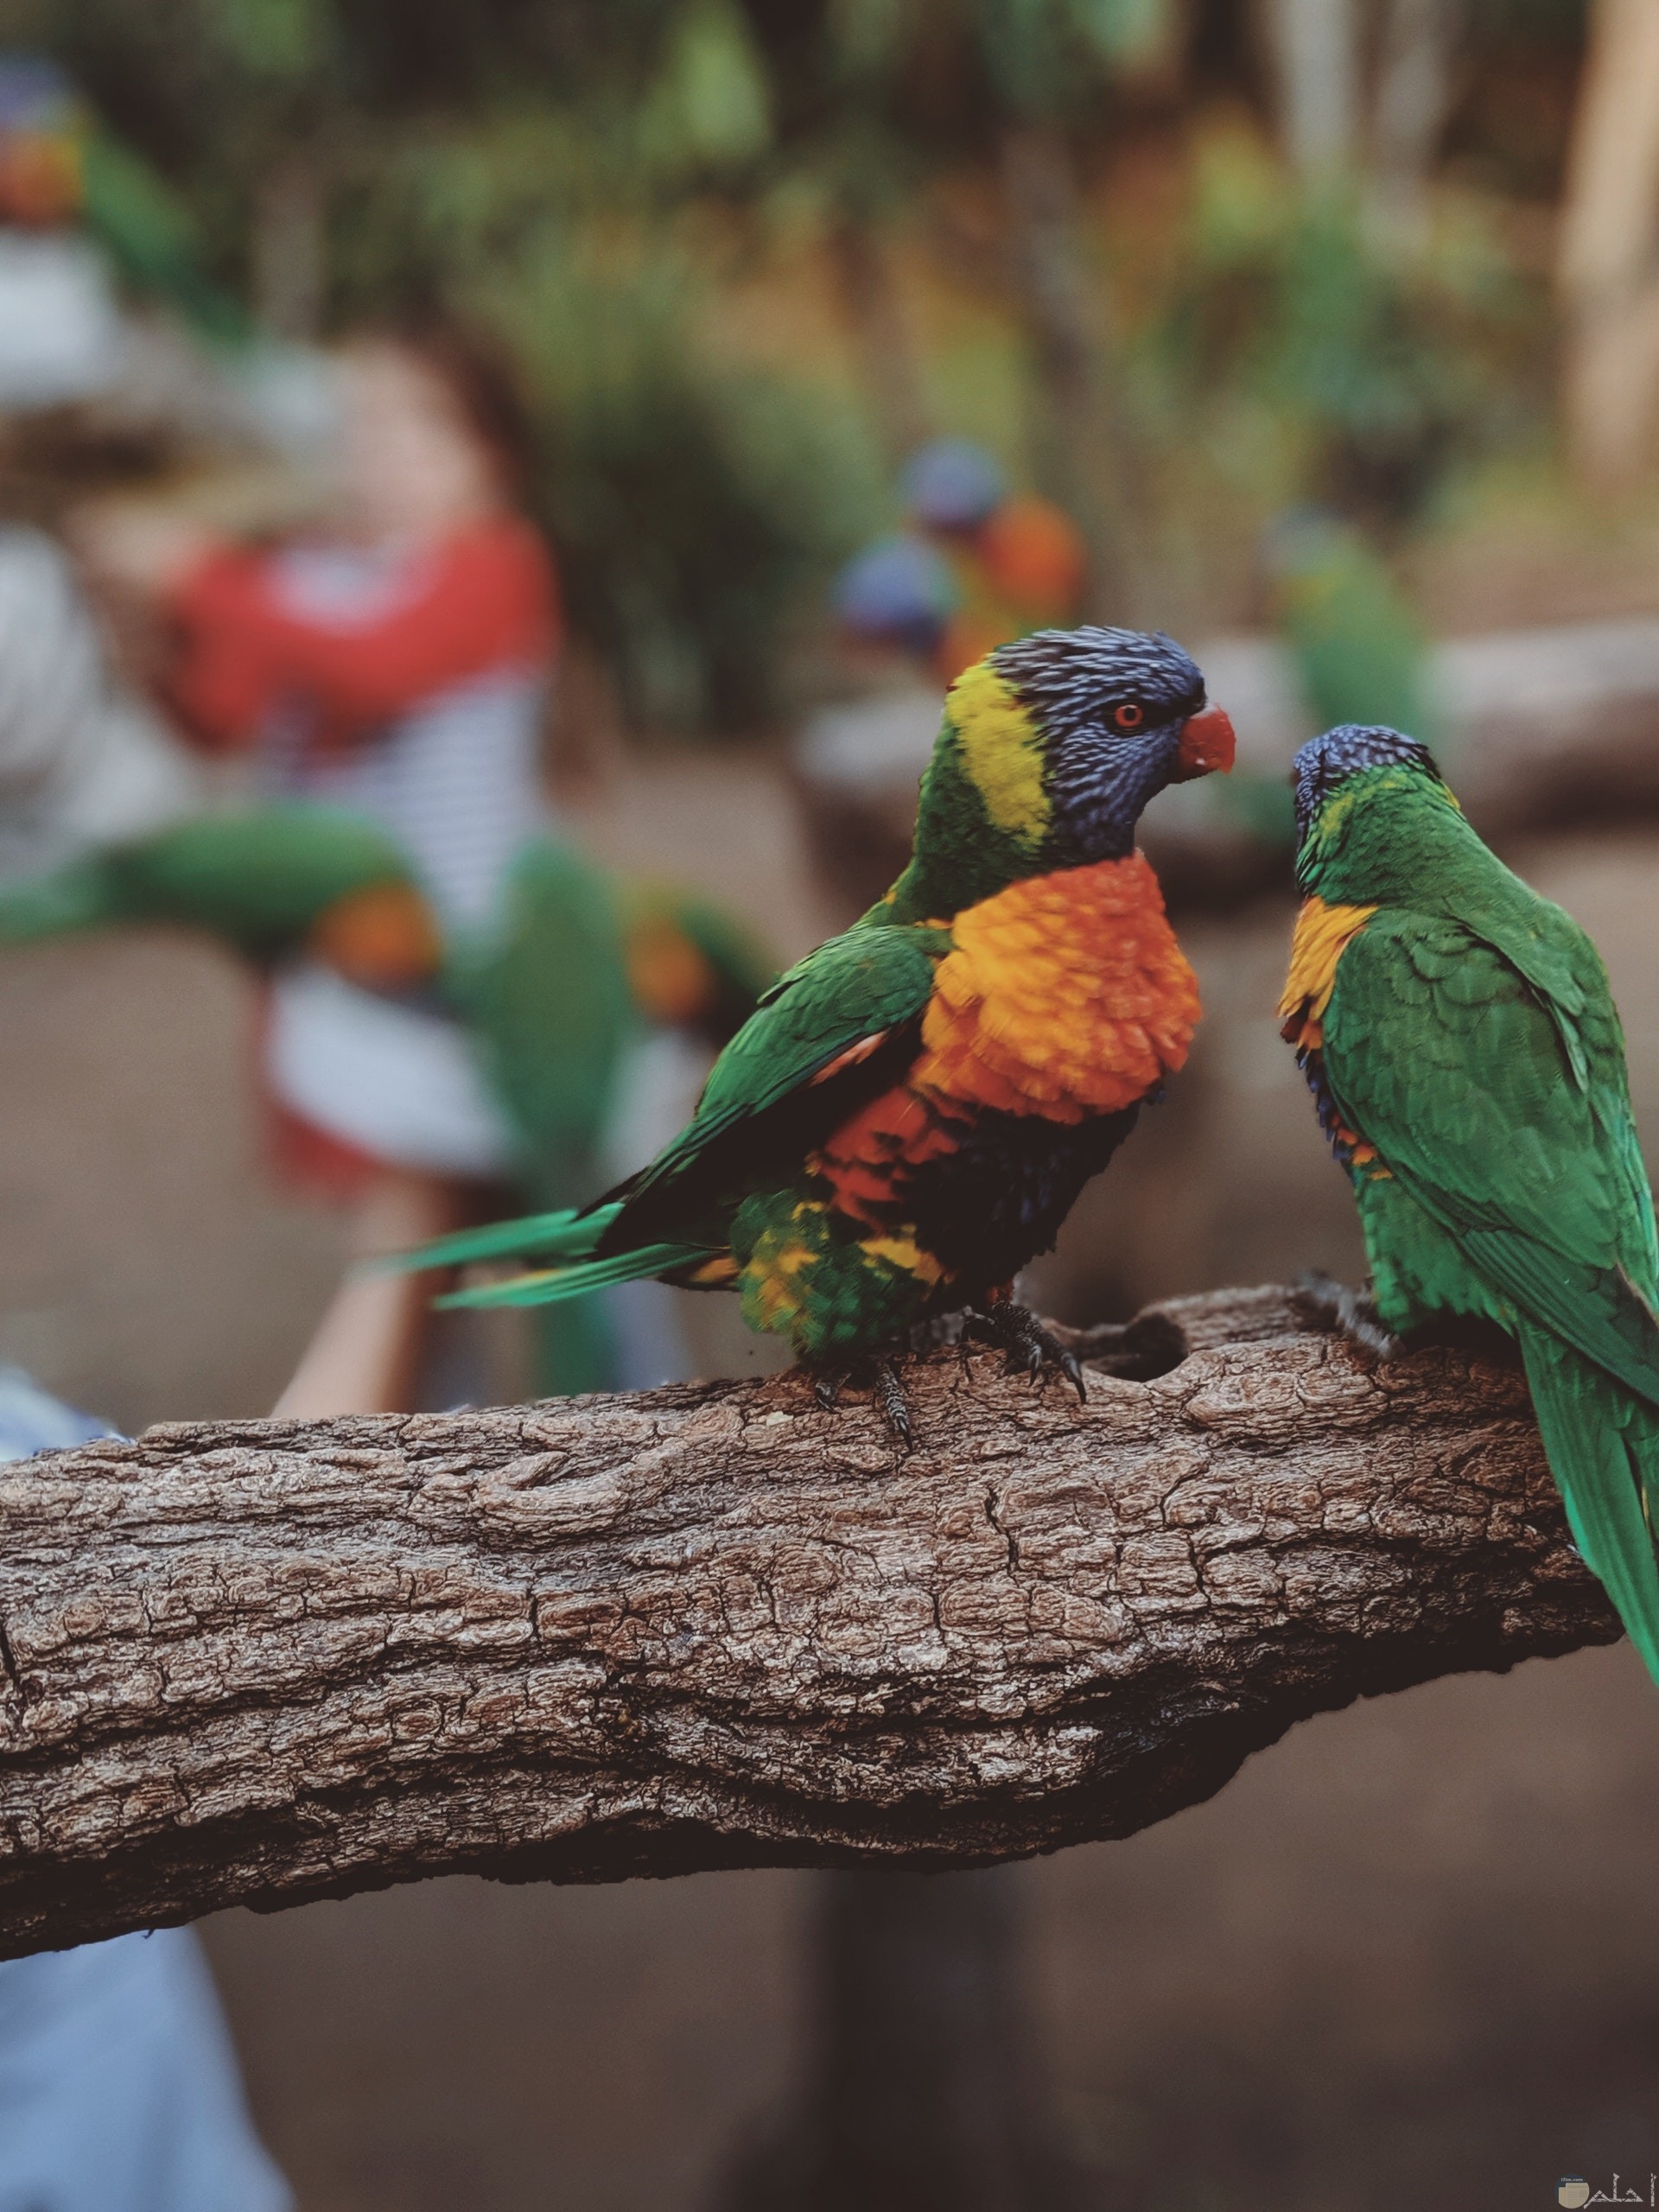 صورة مميزة جدا لطائران جميلان ملونان باللون الأخضر والبرتقالي والأصفر والبنفسجي واقفان علي الغصن